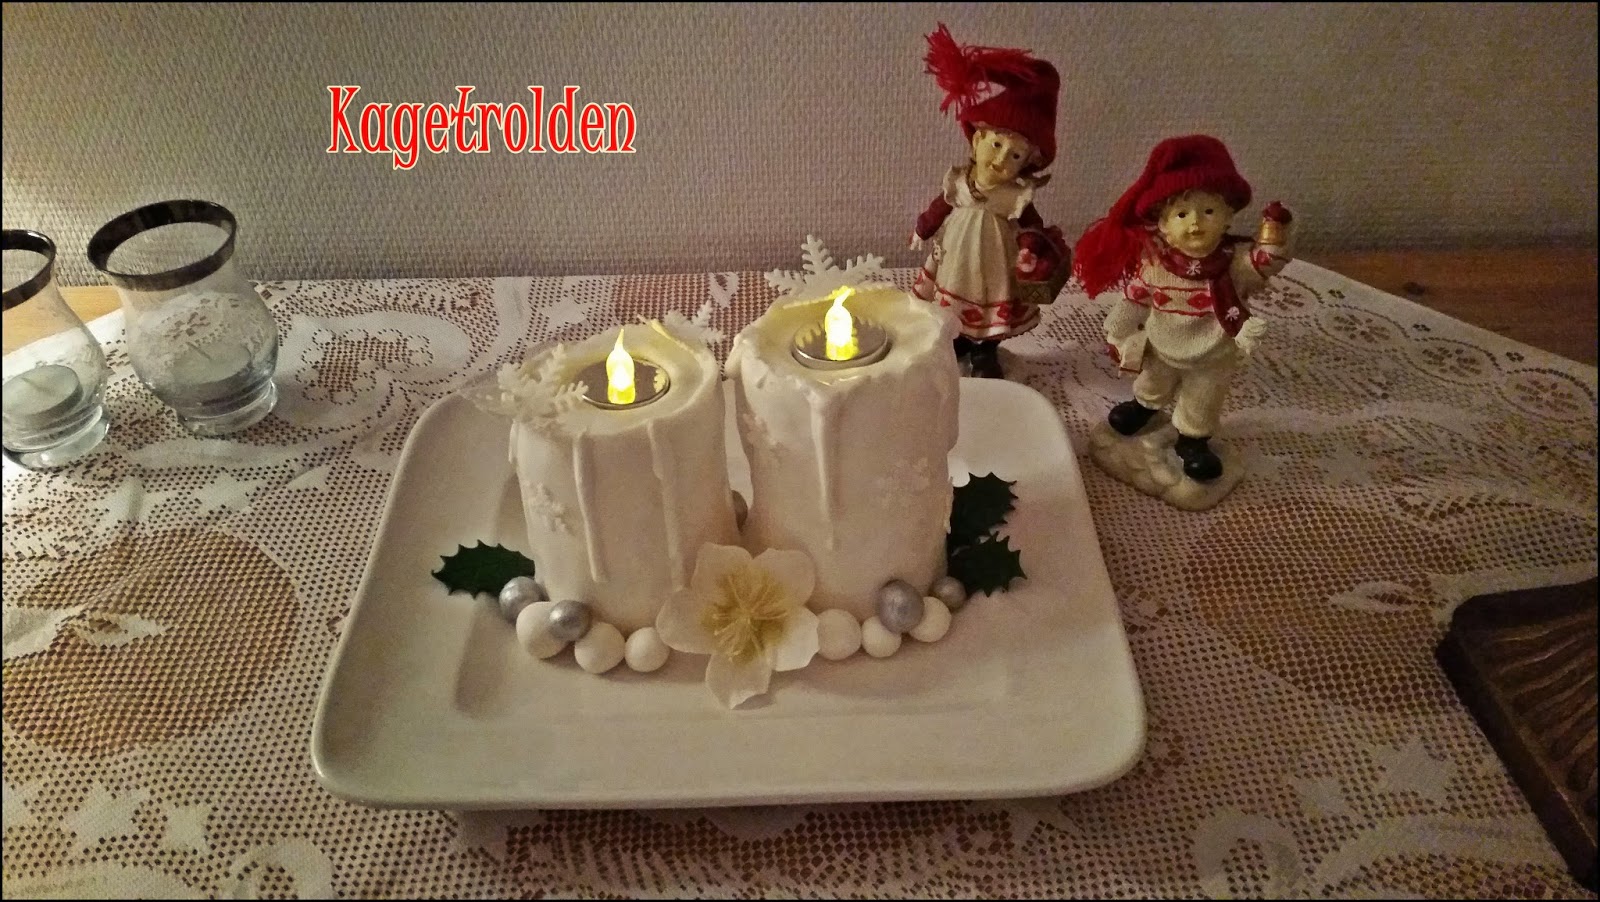 Christmas candle cake